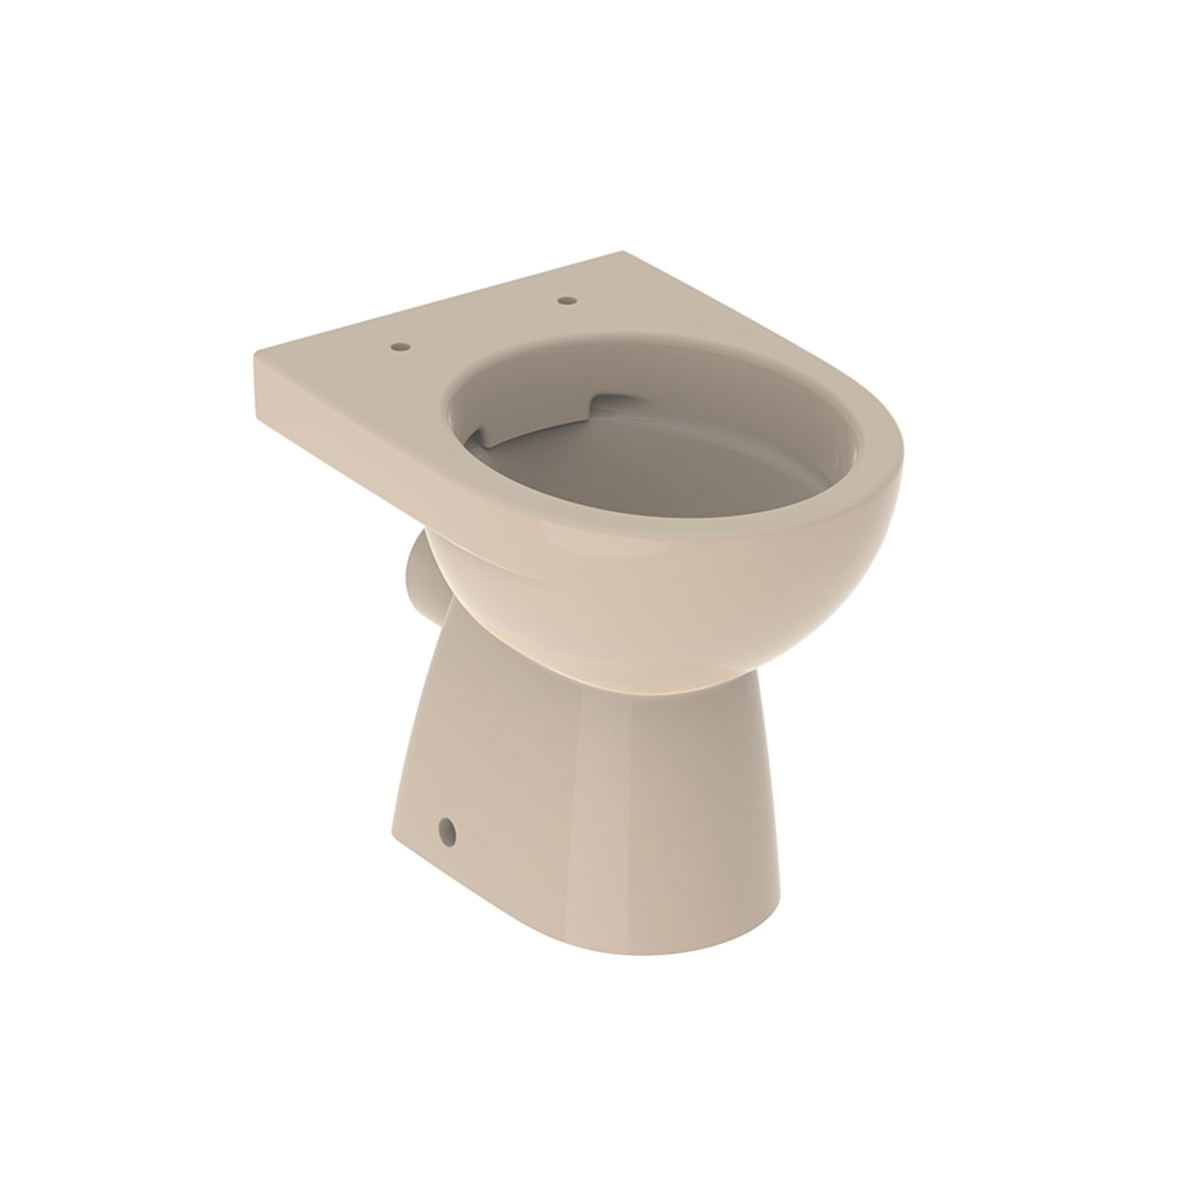 Stand-Tiefspül-WC „Renova“ 35,2 × 40 × 49 cm in bahamabeige, ohne Spülrand